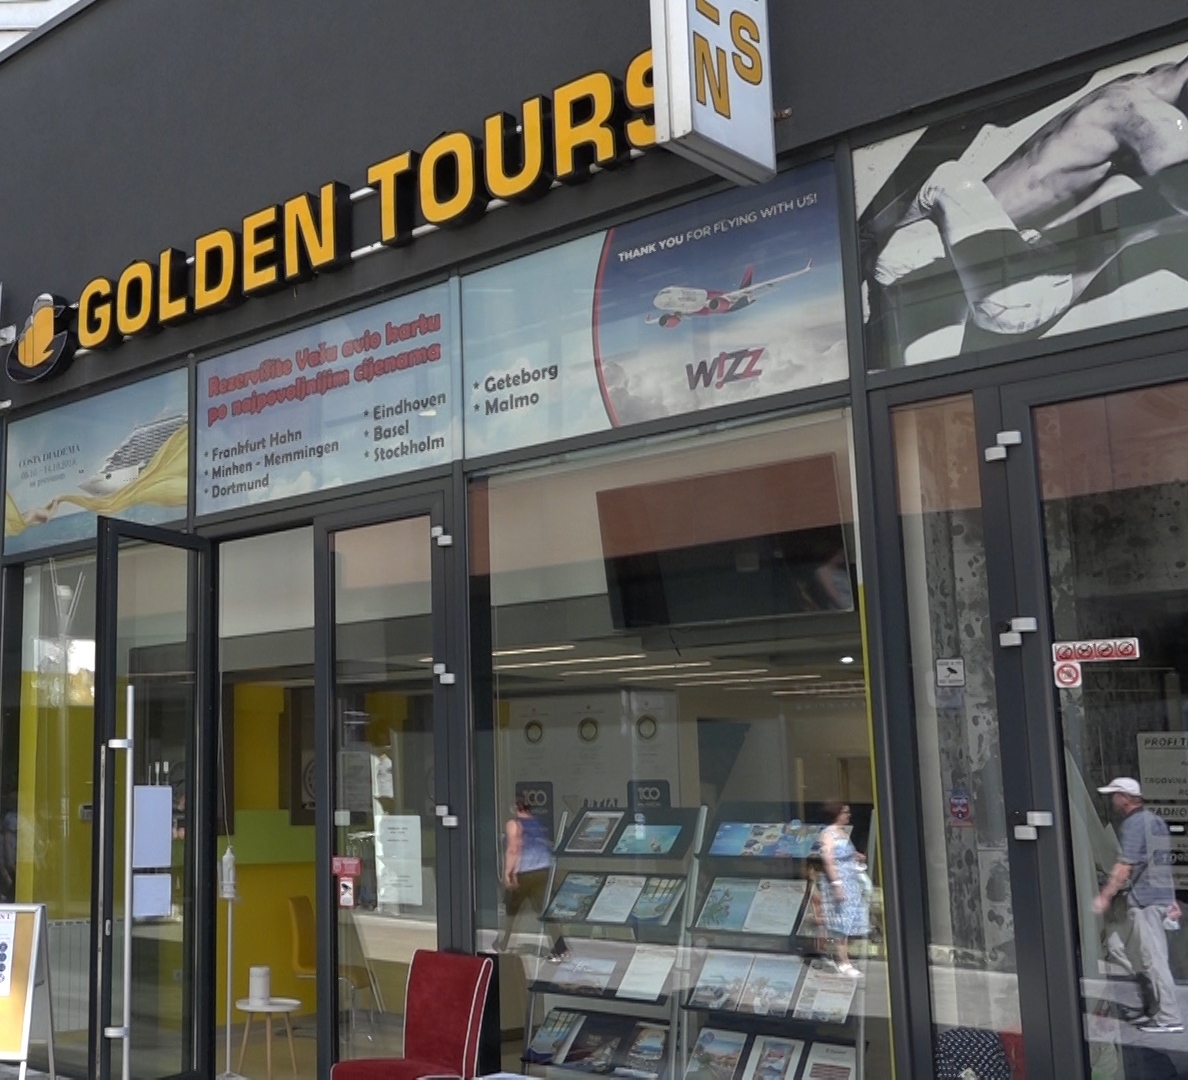 golden tours turska 2022